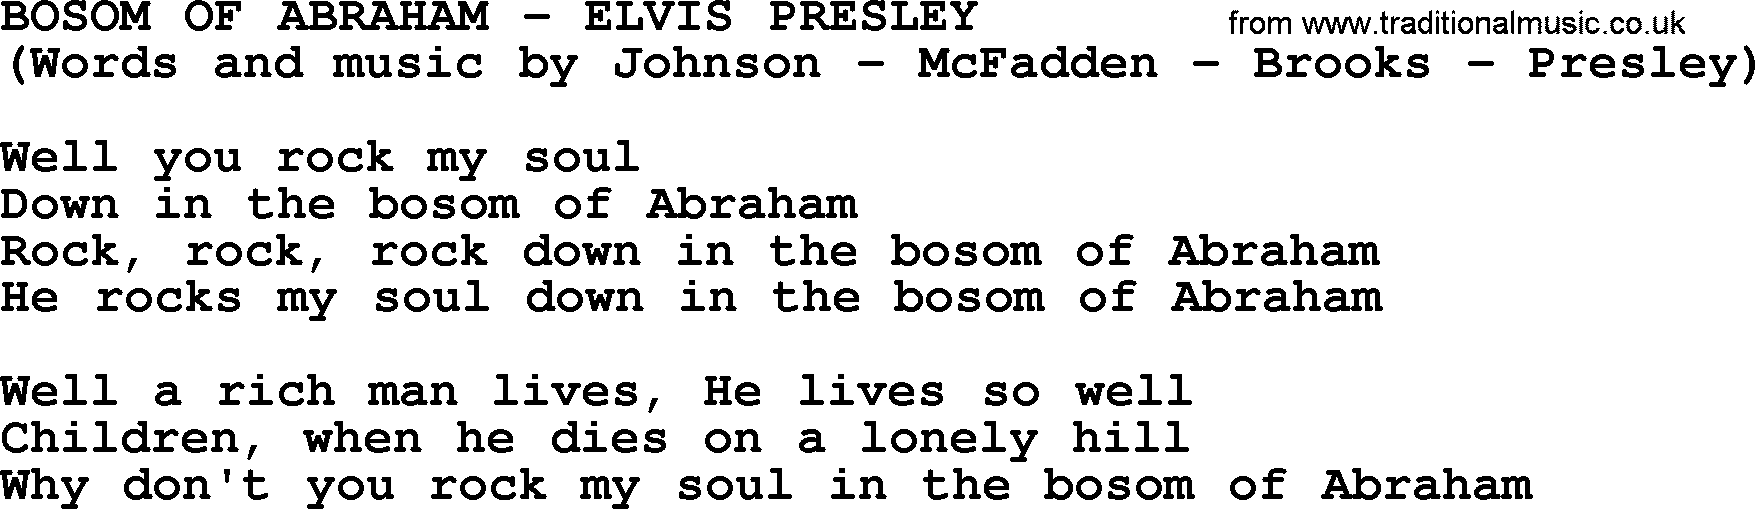 Elvis Presley song: Bosom Of Abraham lyrics